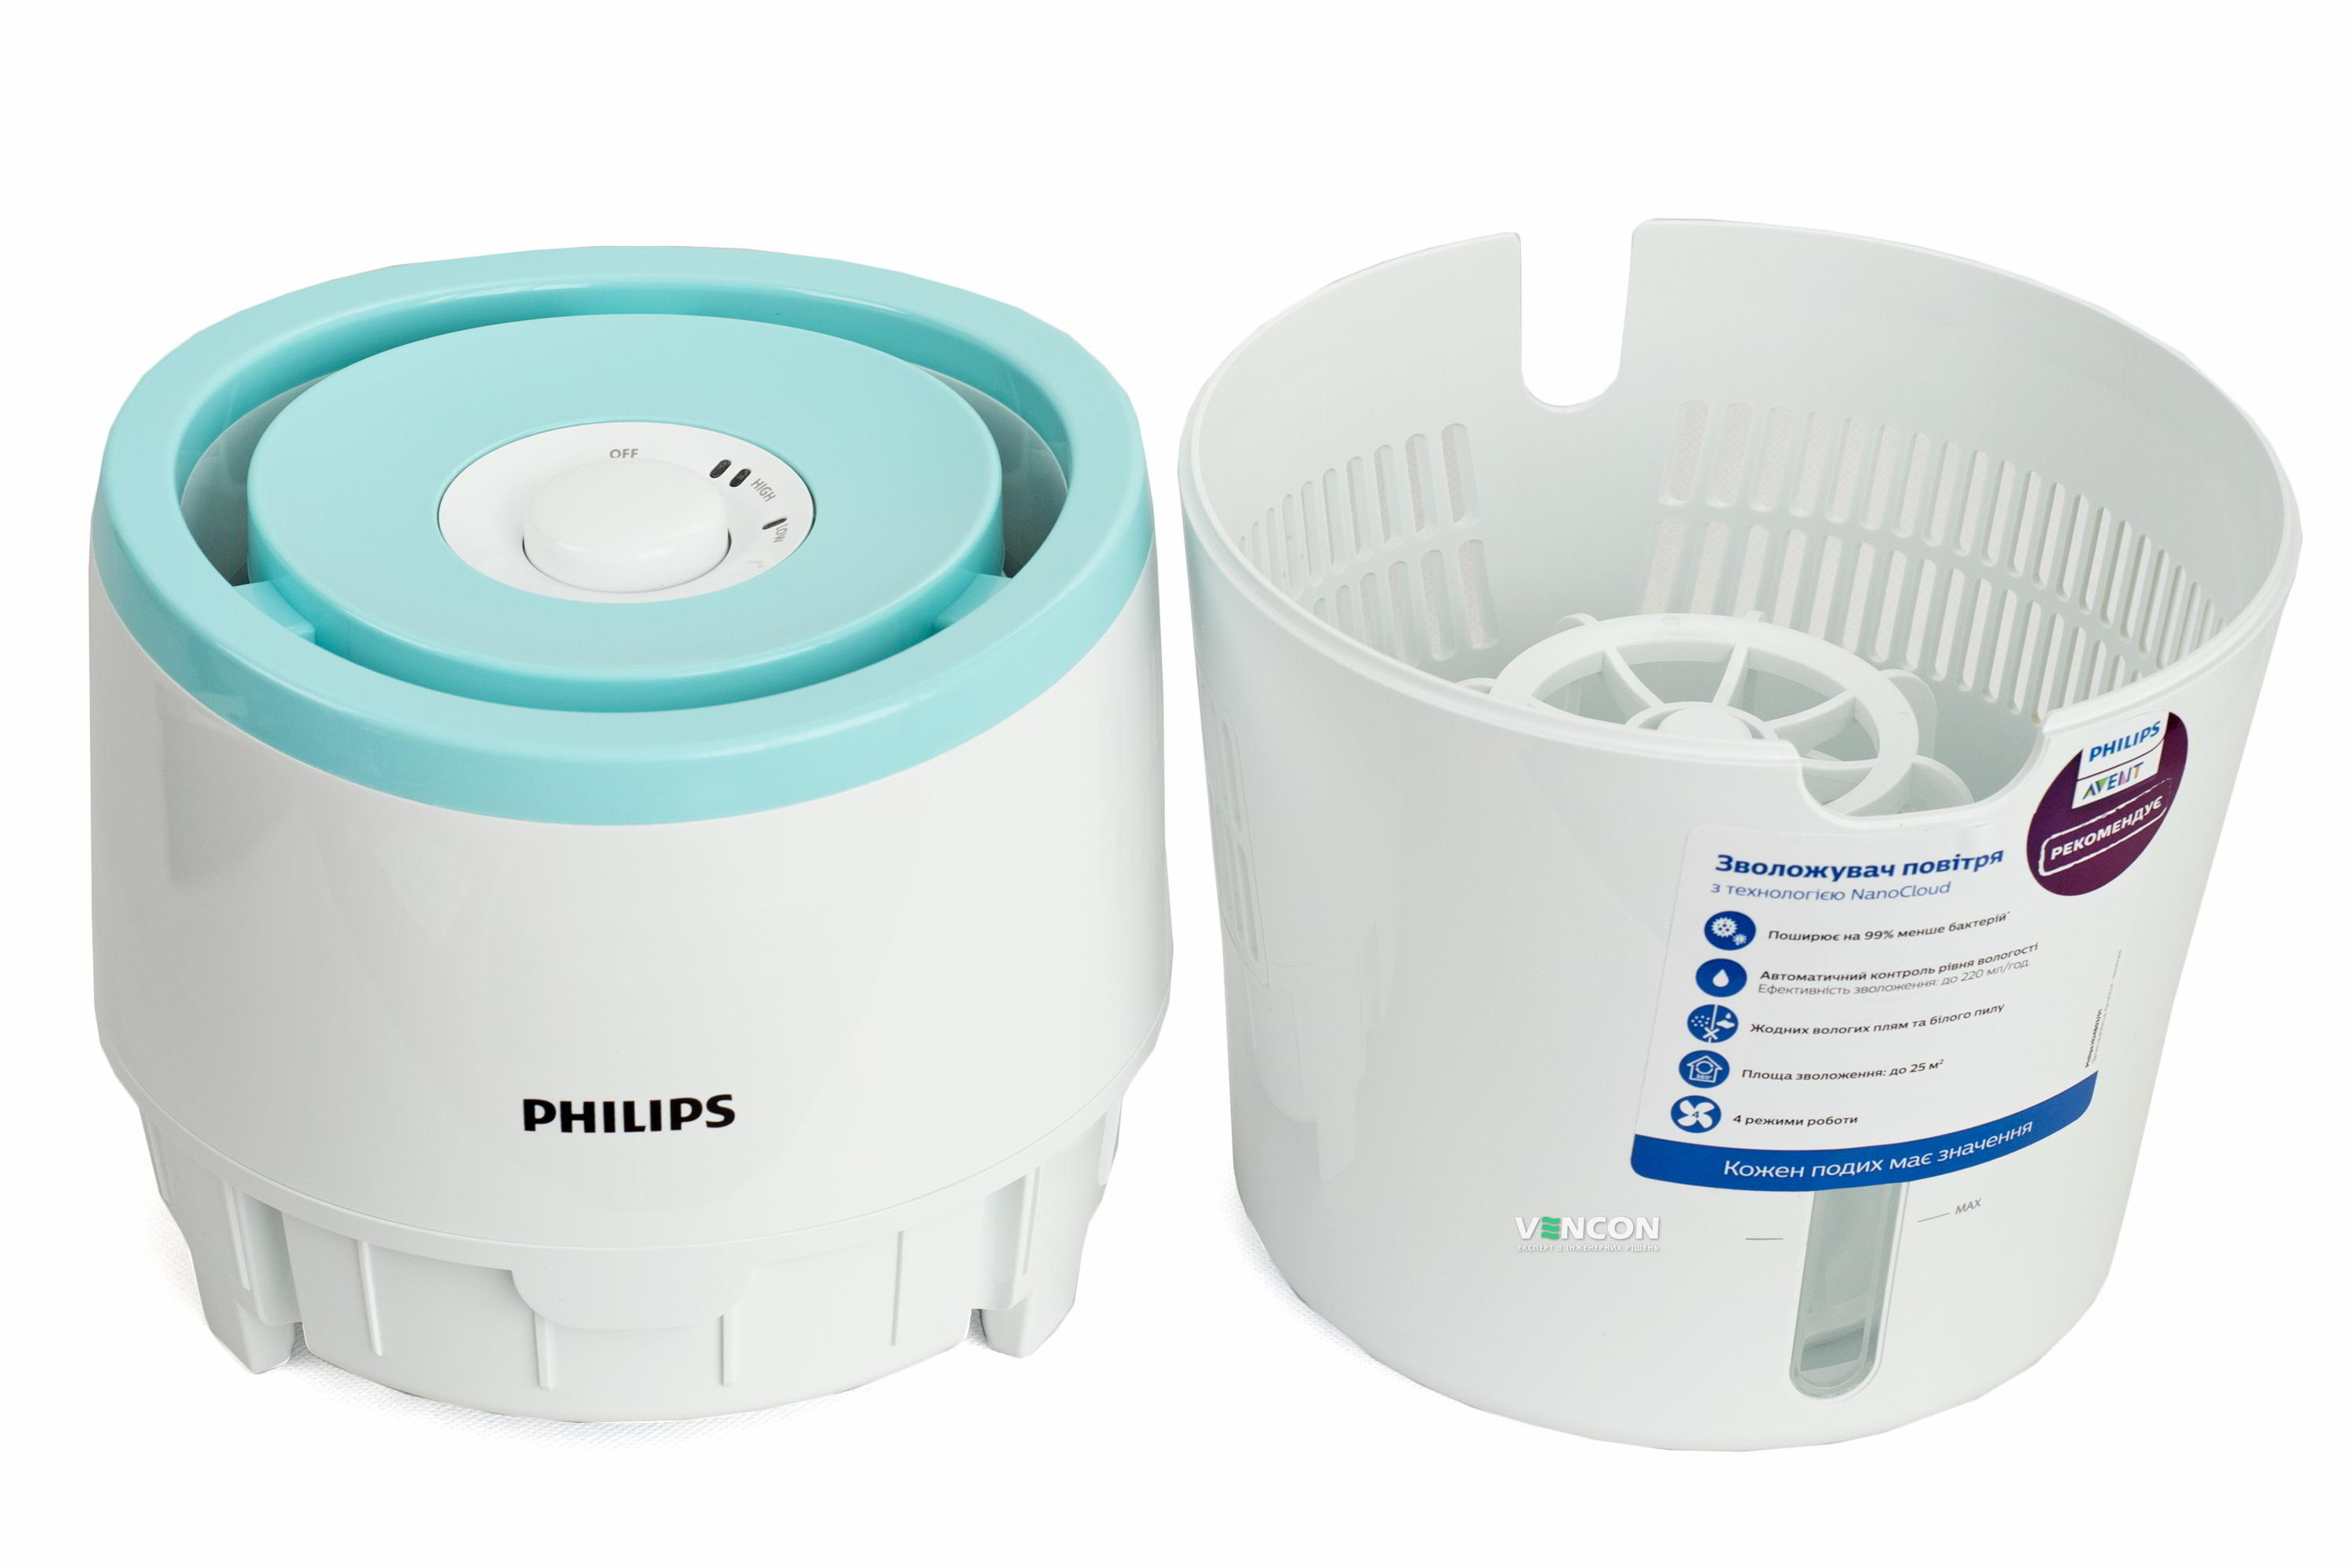 Увлажнитель воздуха Philips HU4801/01 отзывы - изображения 5